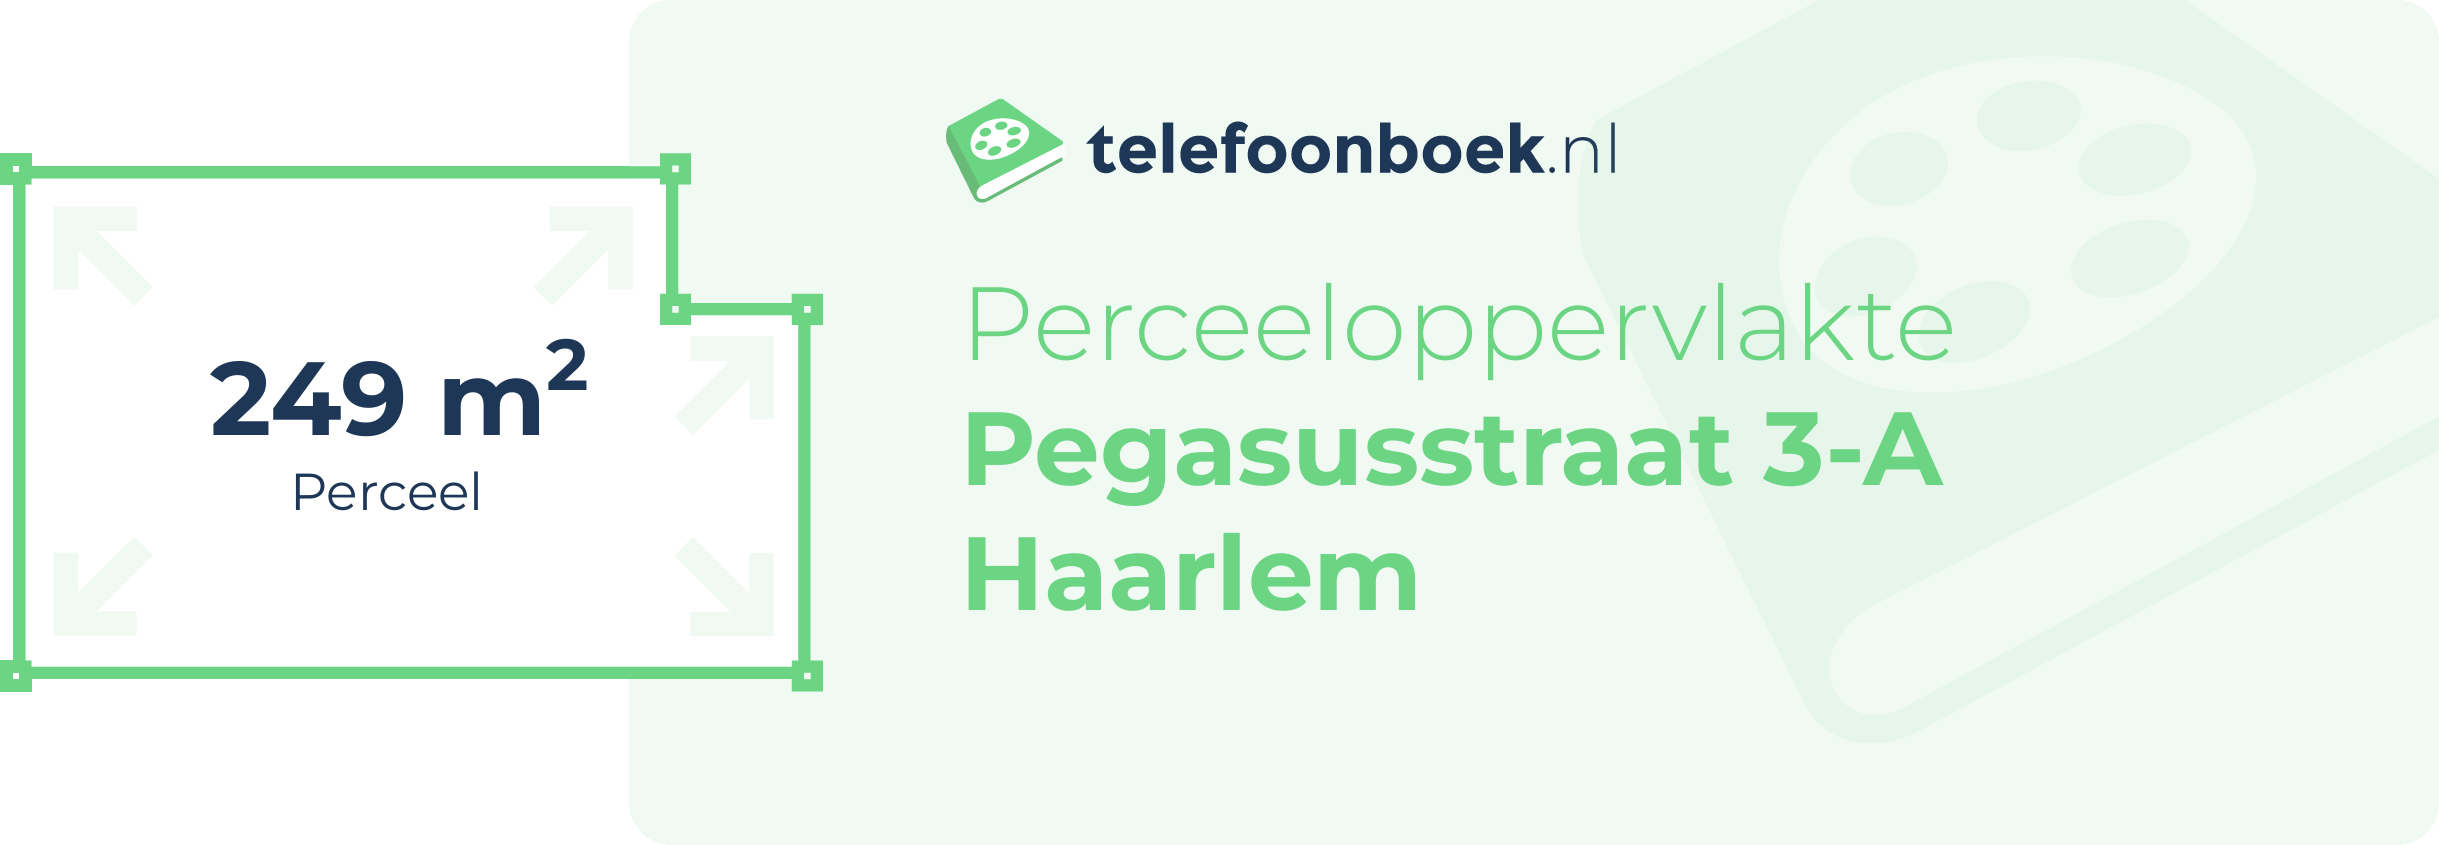 Perceeloppervlakte Pegasusstraat 3-A Haarlem